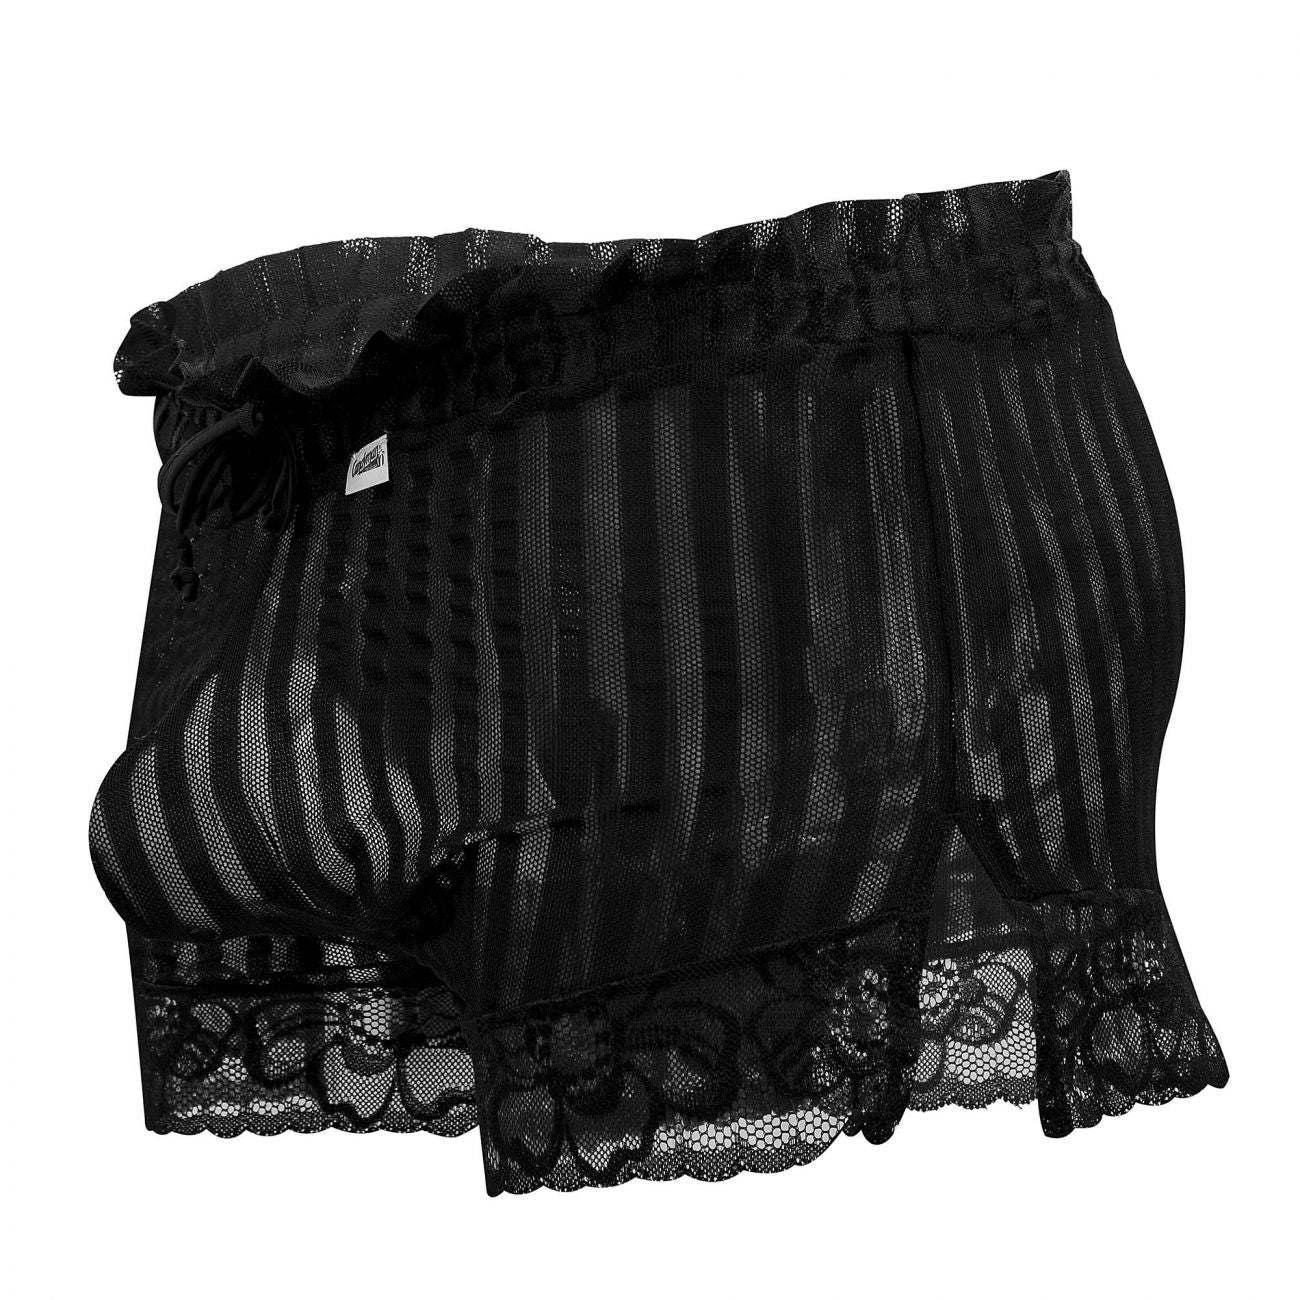 CandyMan 99601X Lounge Pajama Shorts Black Plus Sizes